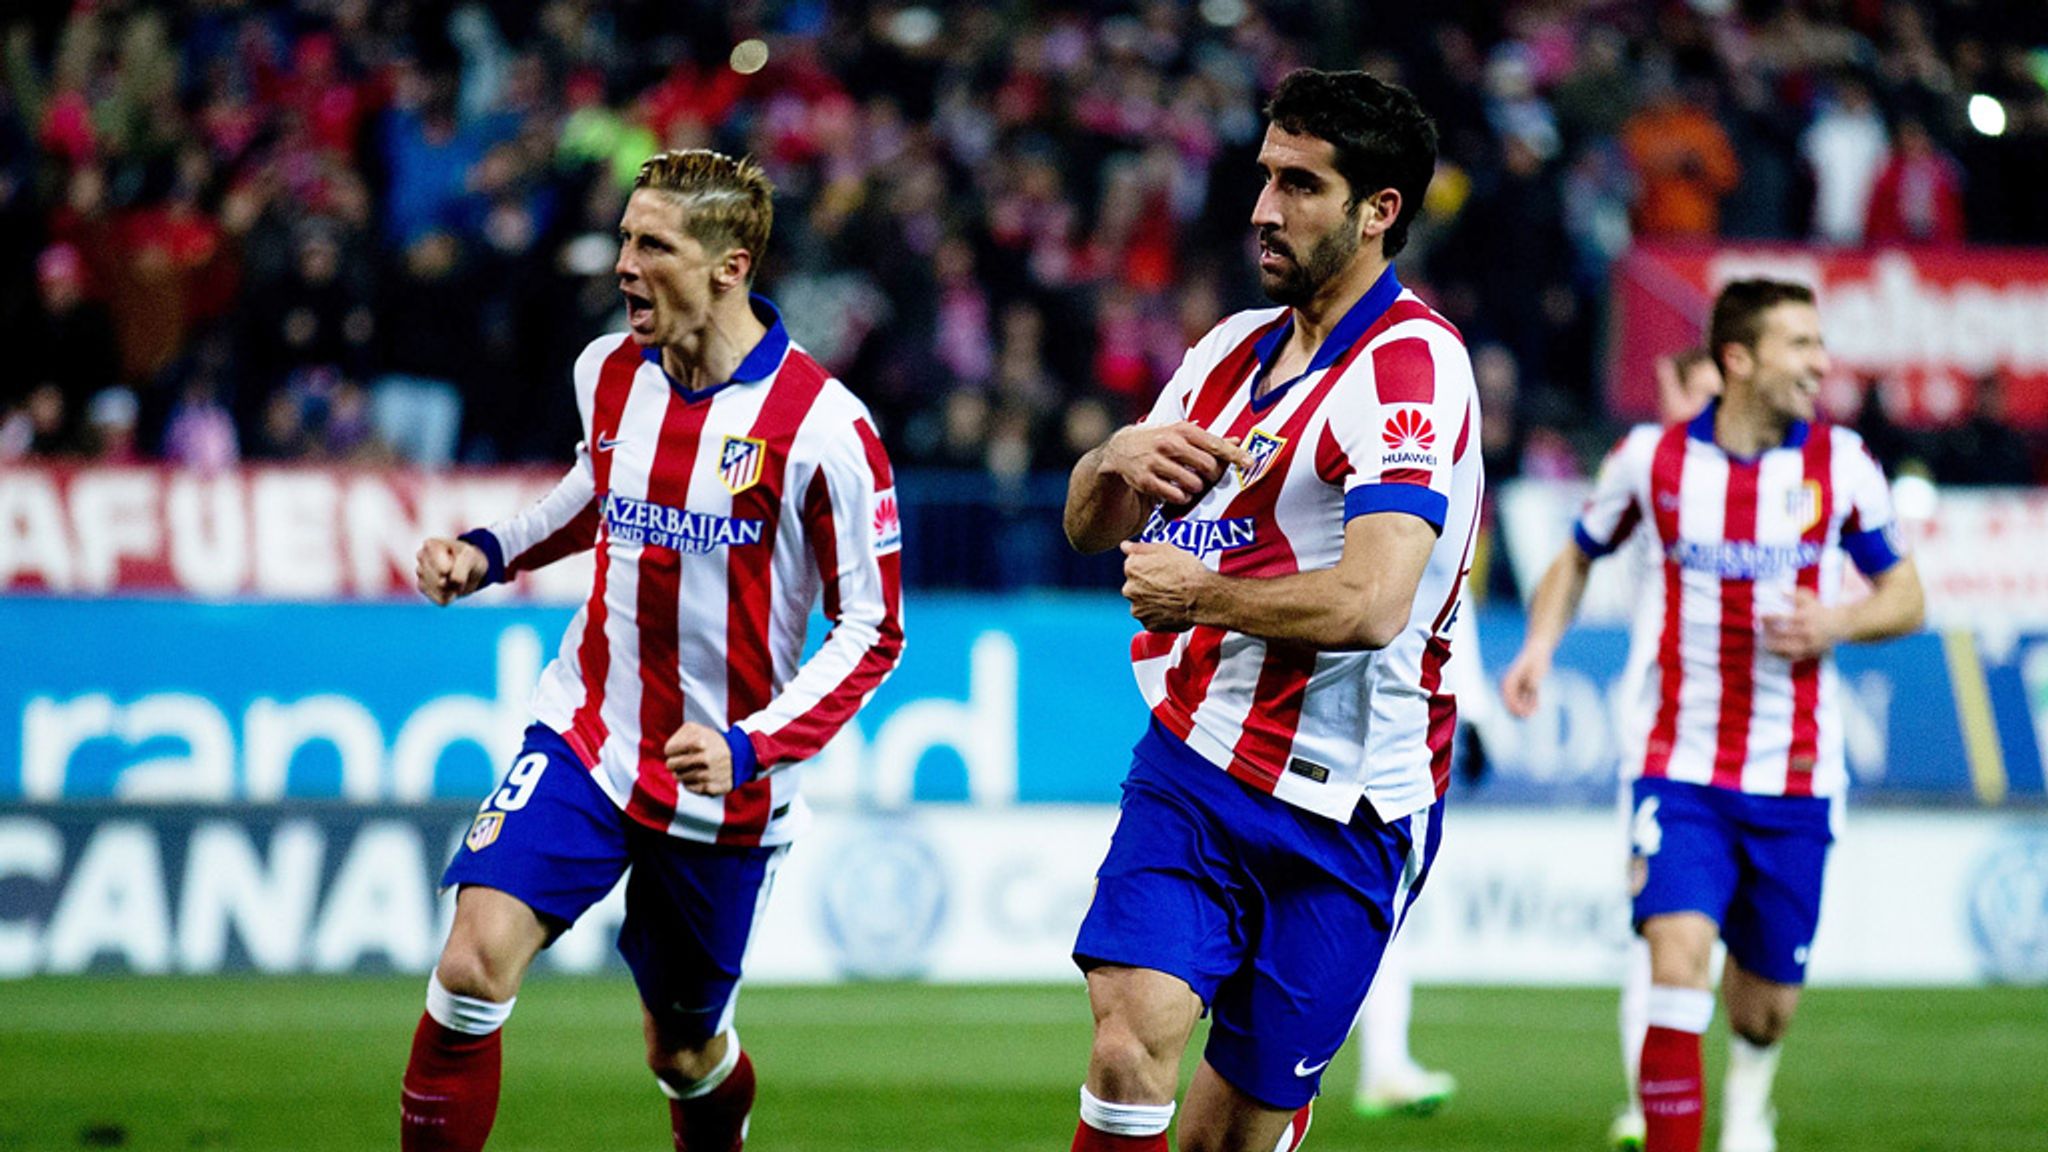 Celta Vigo-Atlético Madrid: 2-1 final score, Atlético win fiery opening  match - Into the Calderon